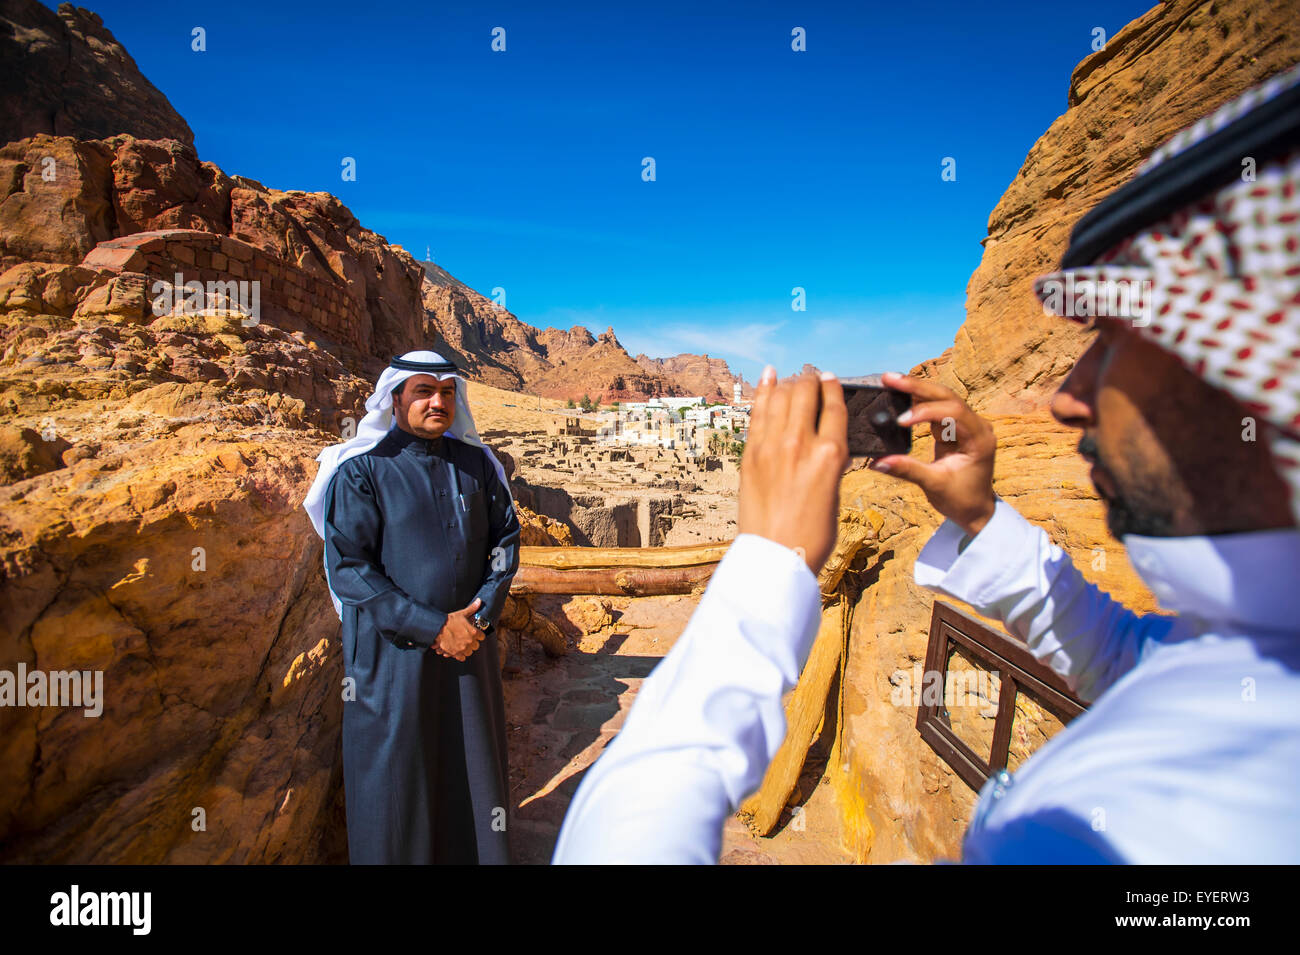 Arabia turisti scattano fotografie nei pressi di Duba; Arabia Saudita Foto  stock - Alamy